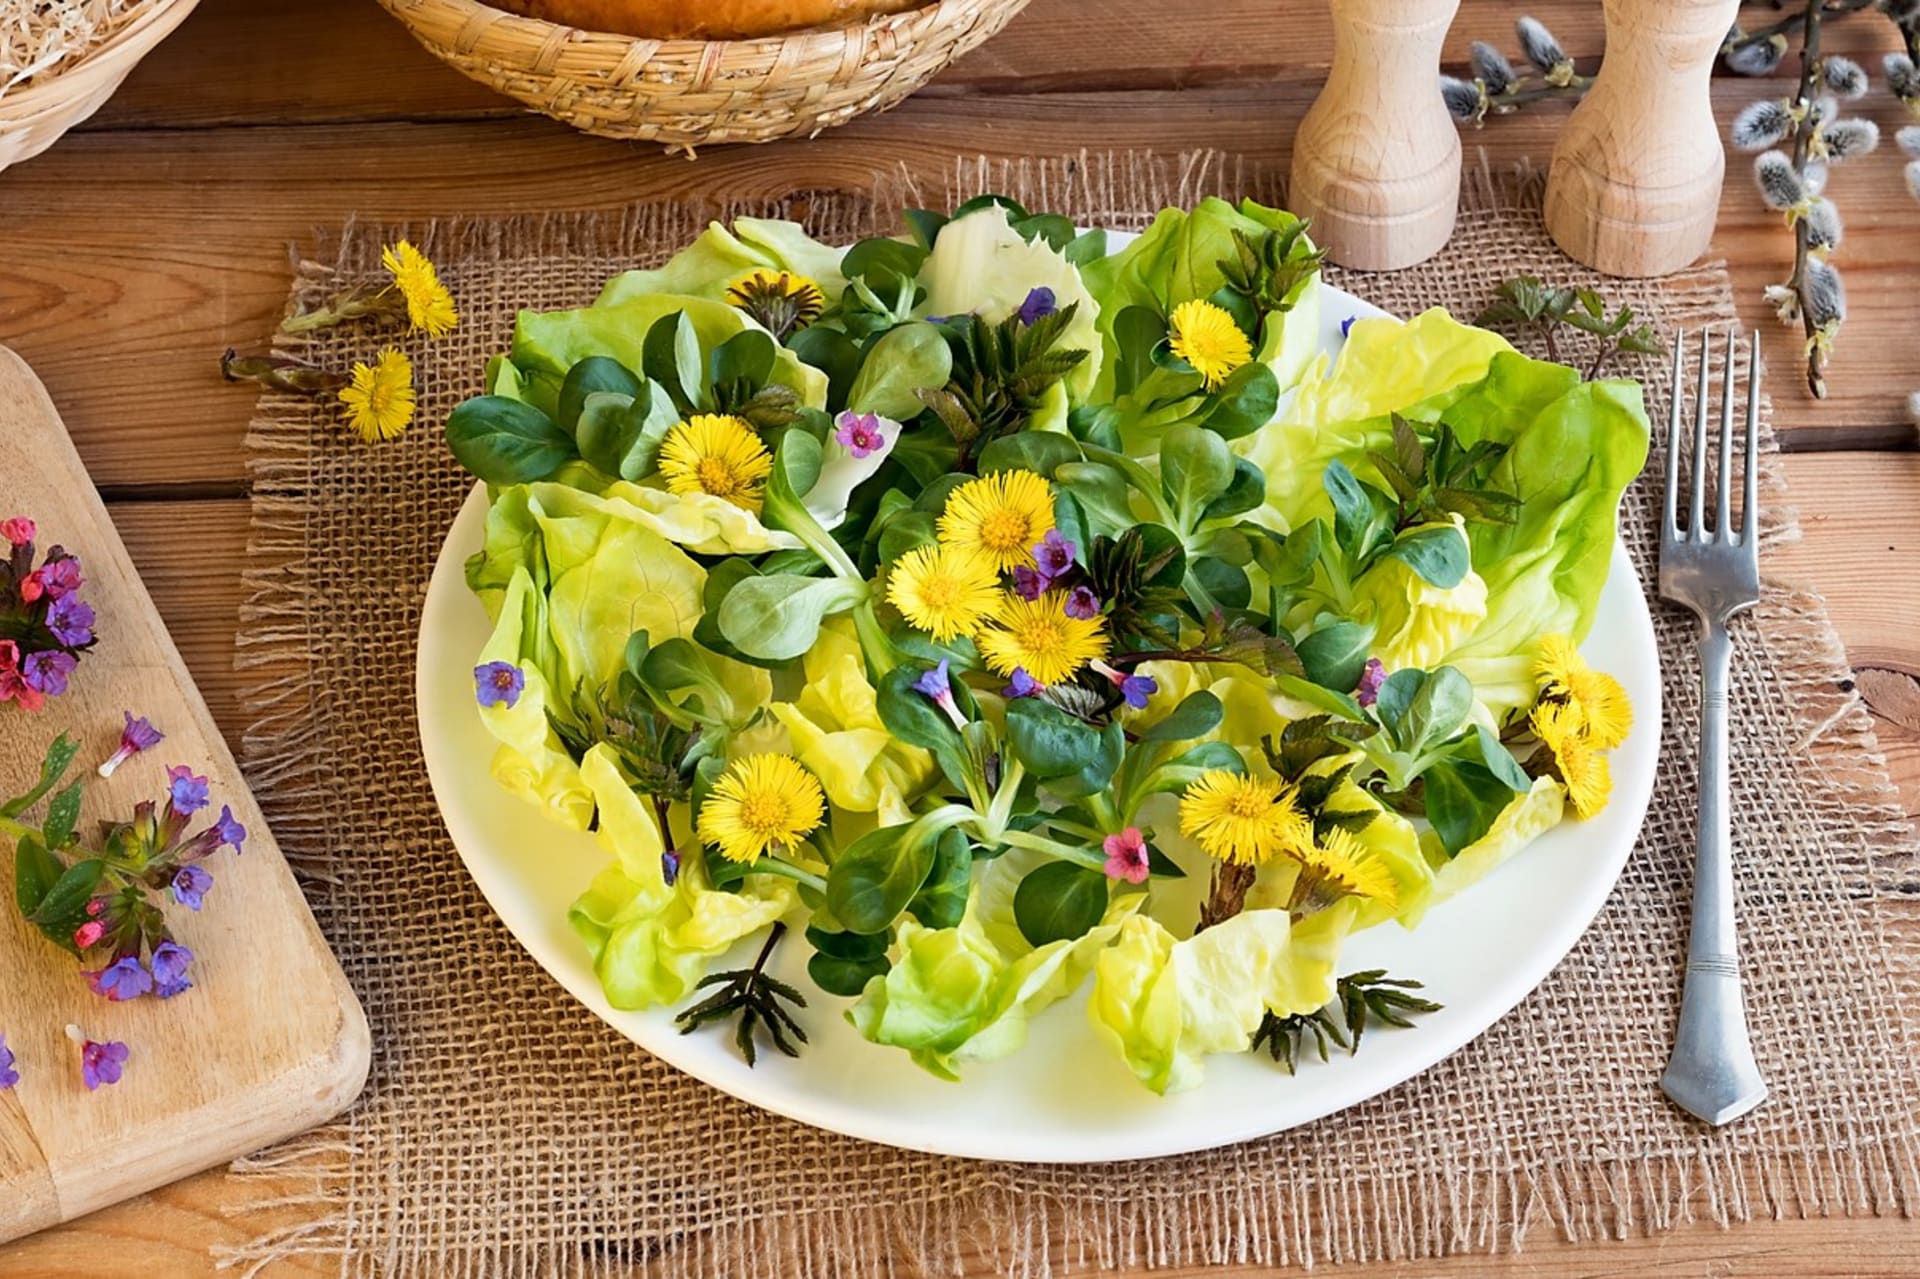 Pľúcnik sa môže na jar používať ako jedlá bylina. Čerstvá kvitnúca stonka sa môže v malom množstve použiť do šalátov.